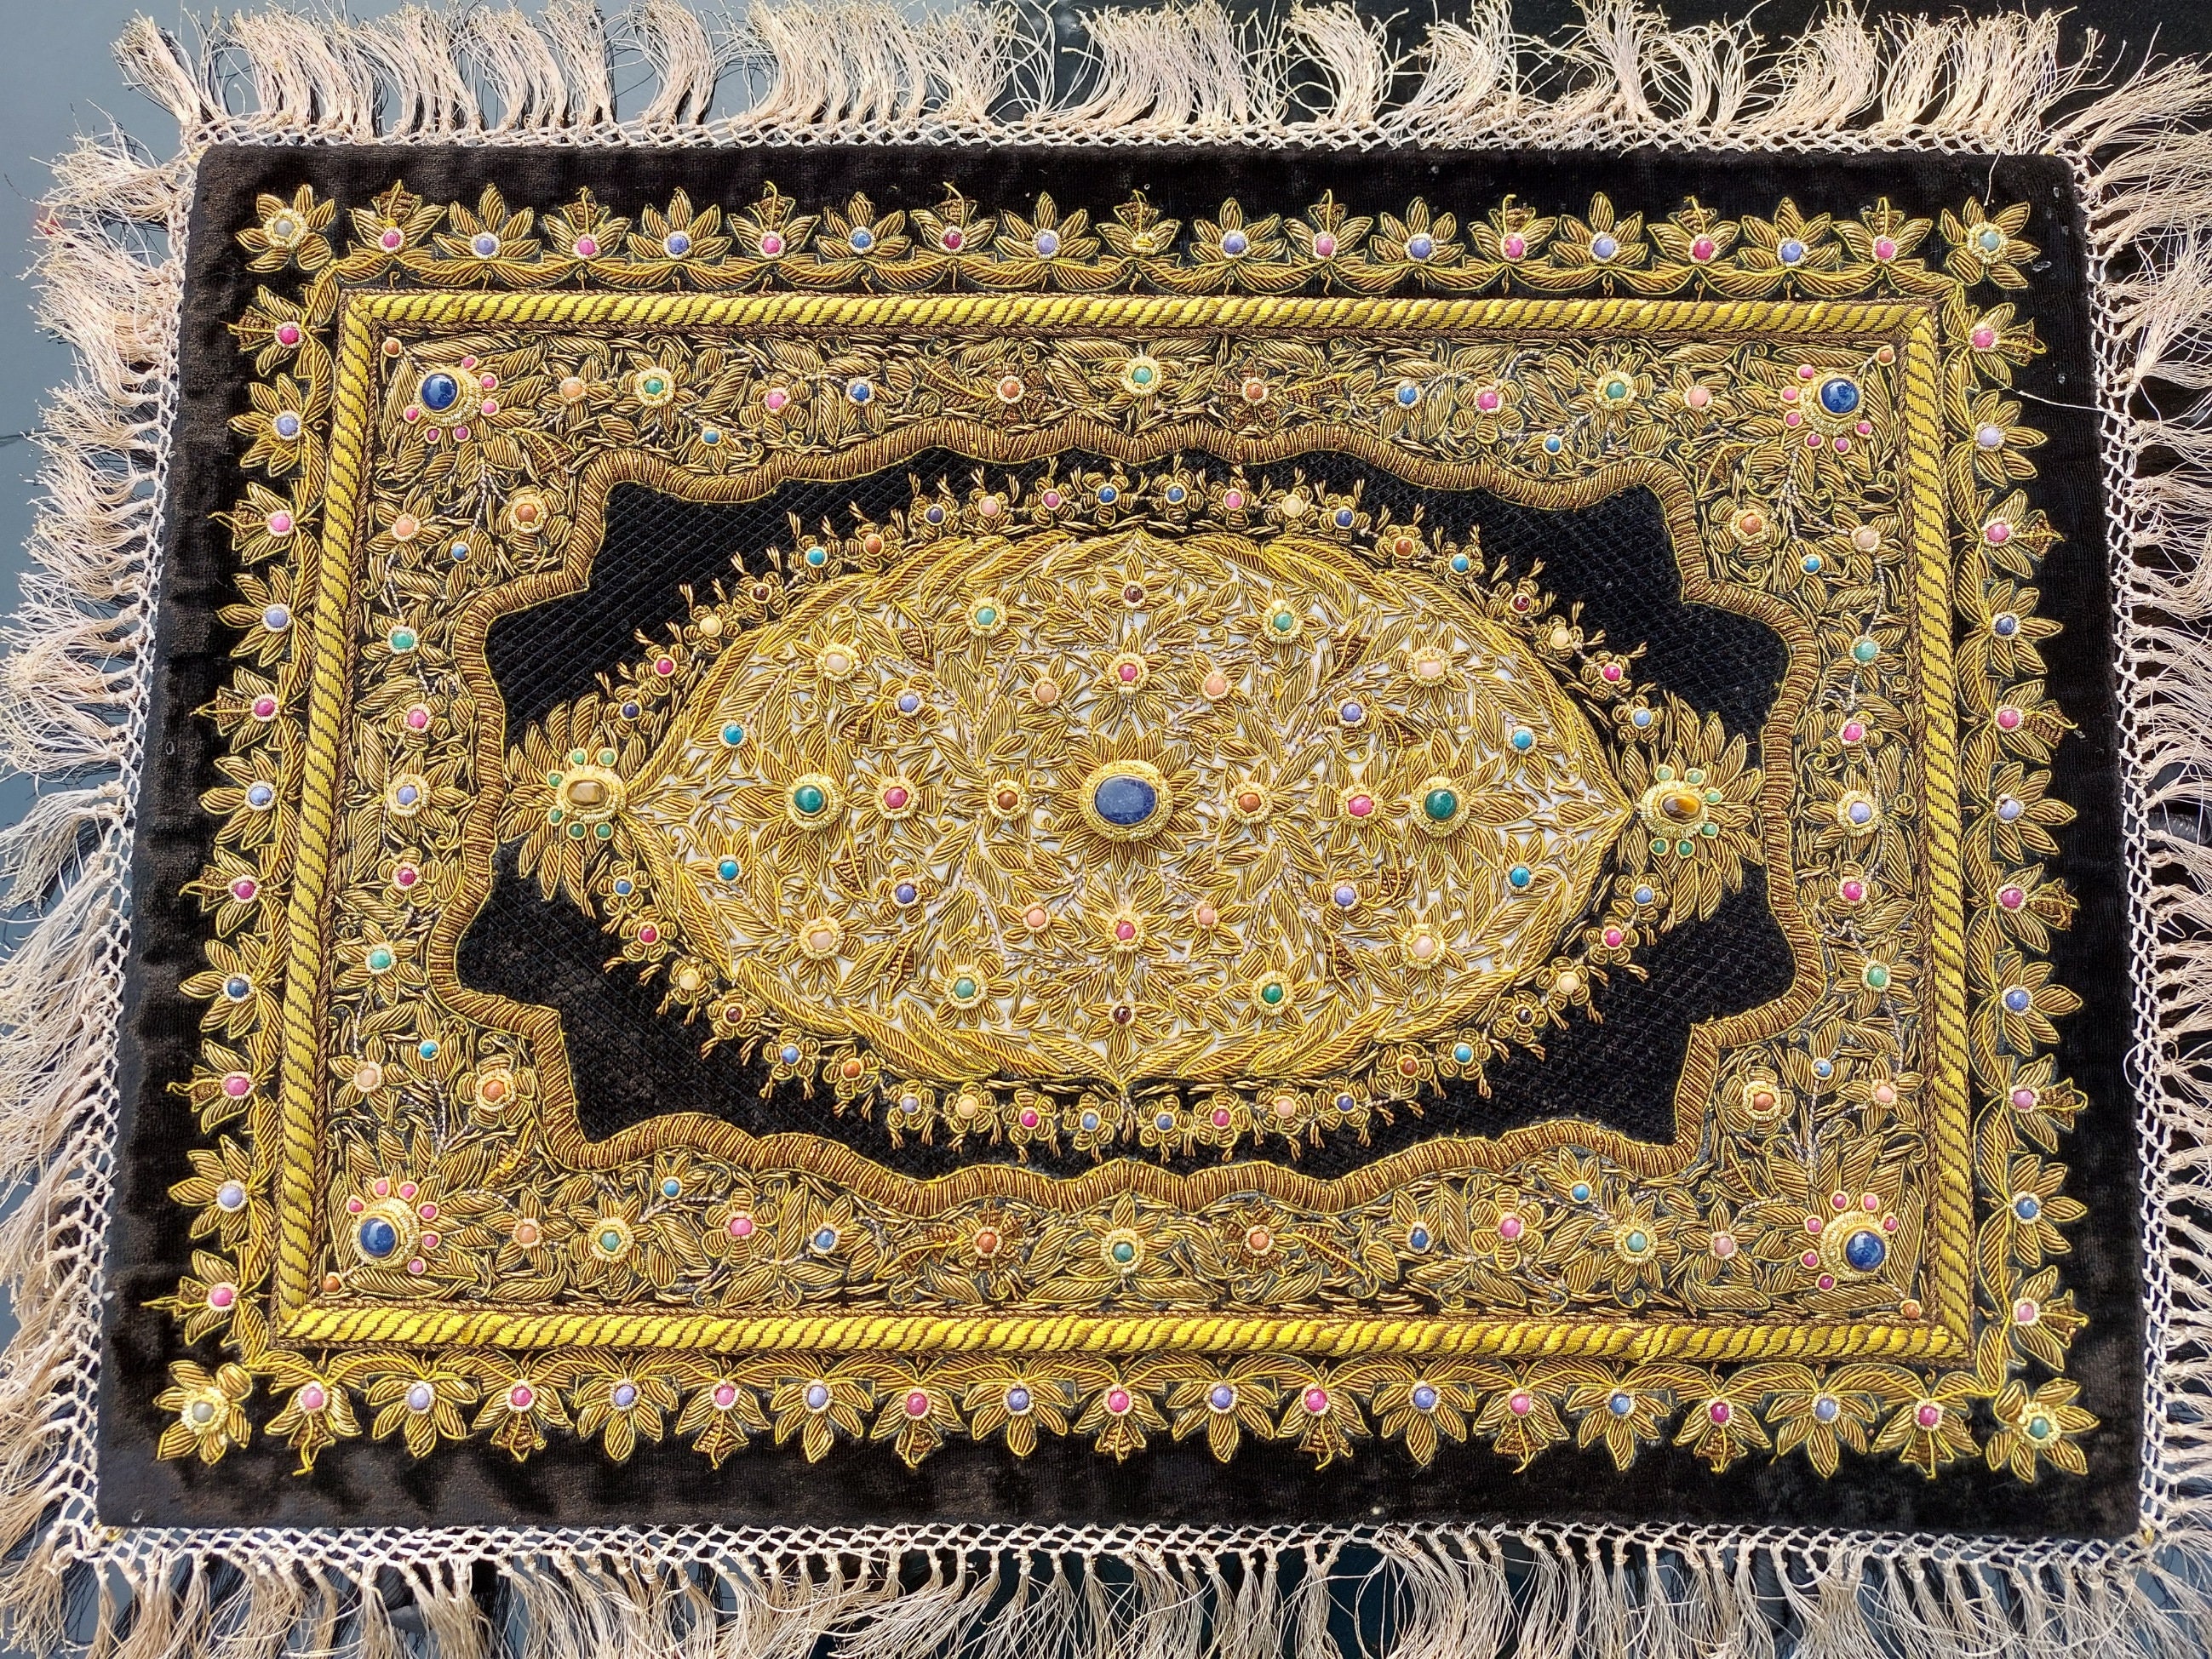 Royal Ancient Zardosi Jewel Art Wall Hanging Hand Embroidered